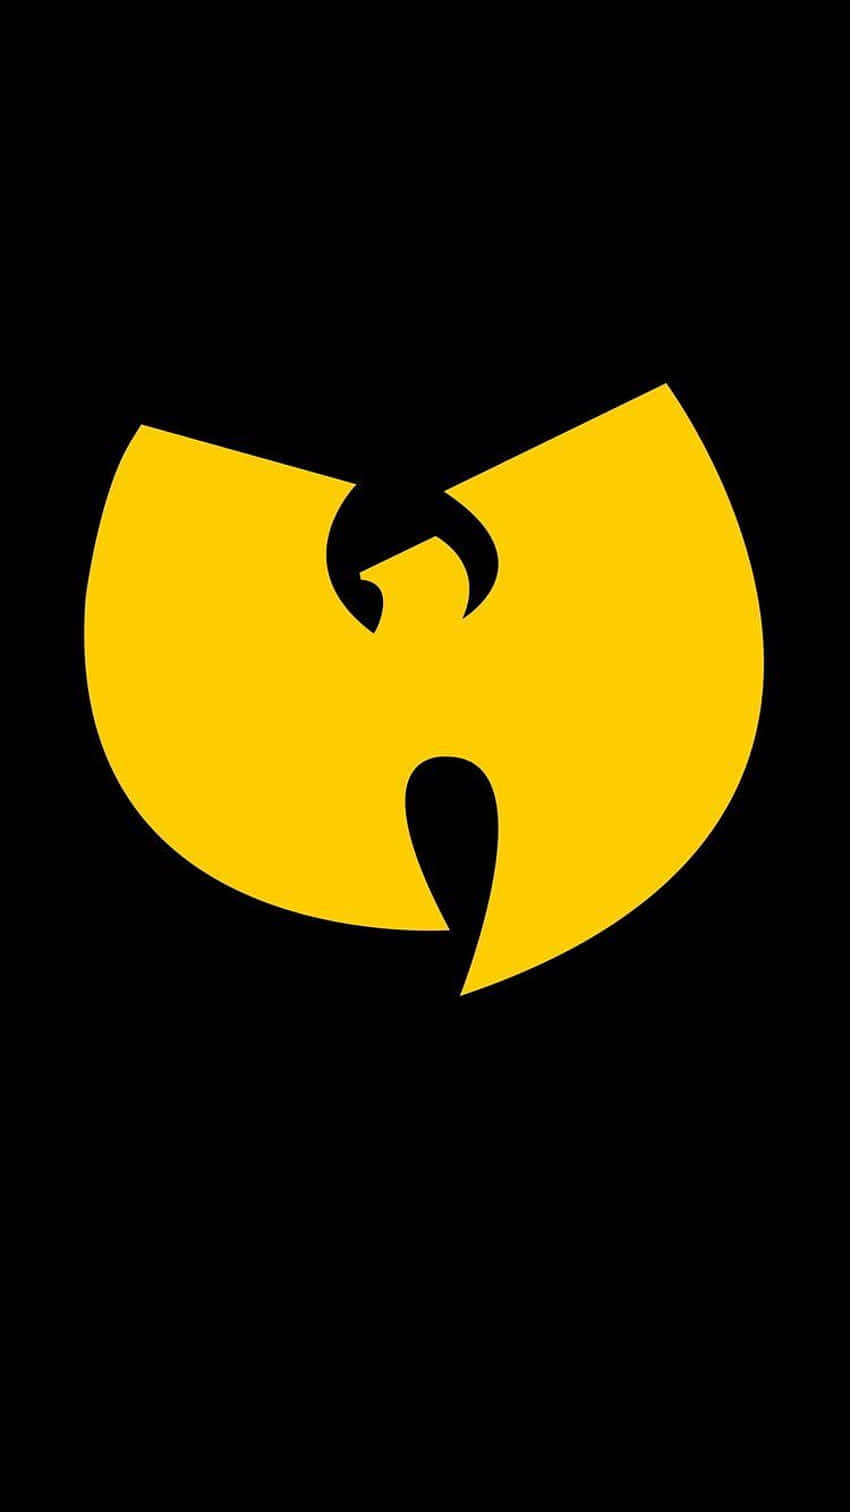 Wu-Tang Clan Logo Wallpaper